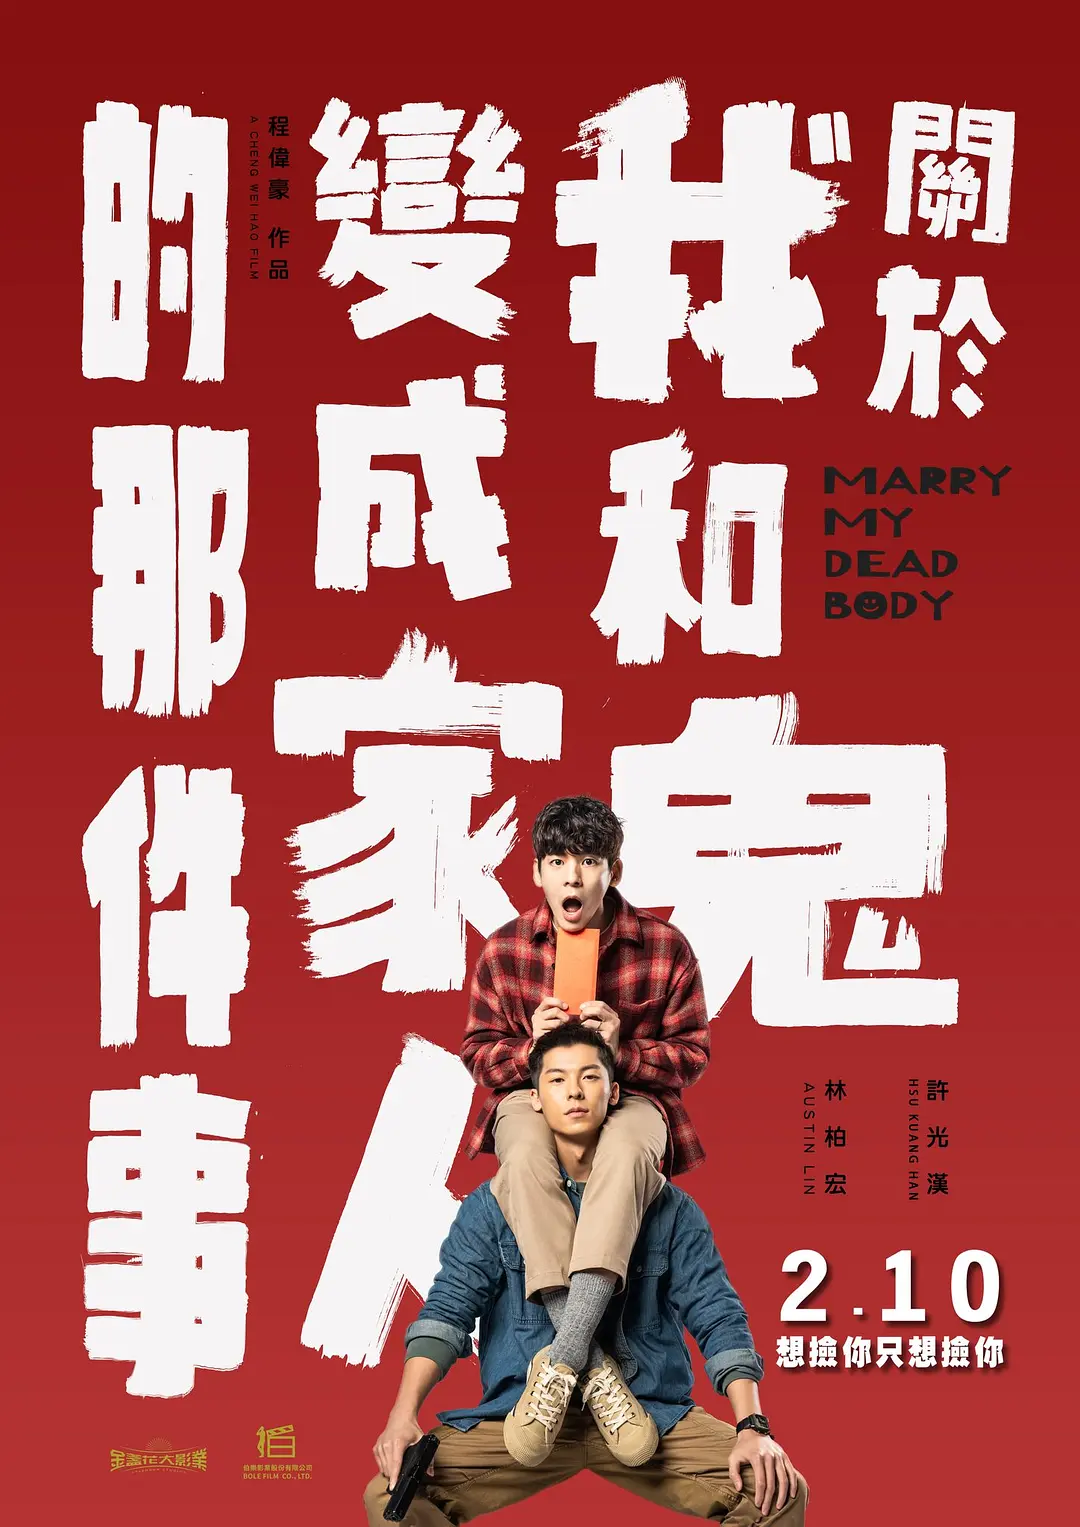 【迅雷+夸克+阿里+百度】许光汉主演——台湾最新高分喜剧悬疑剧情《关于我和鬼变成家人的那件事》Marry My Dead Body（2023）-港台电视剧论坛-电视剧资源分享区-资源汇